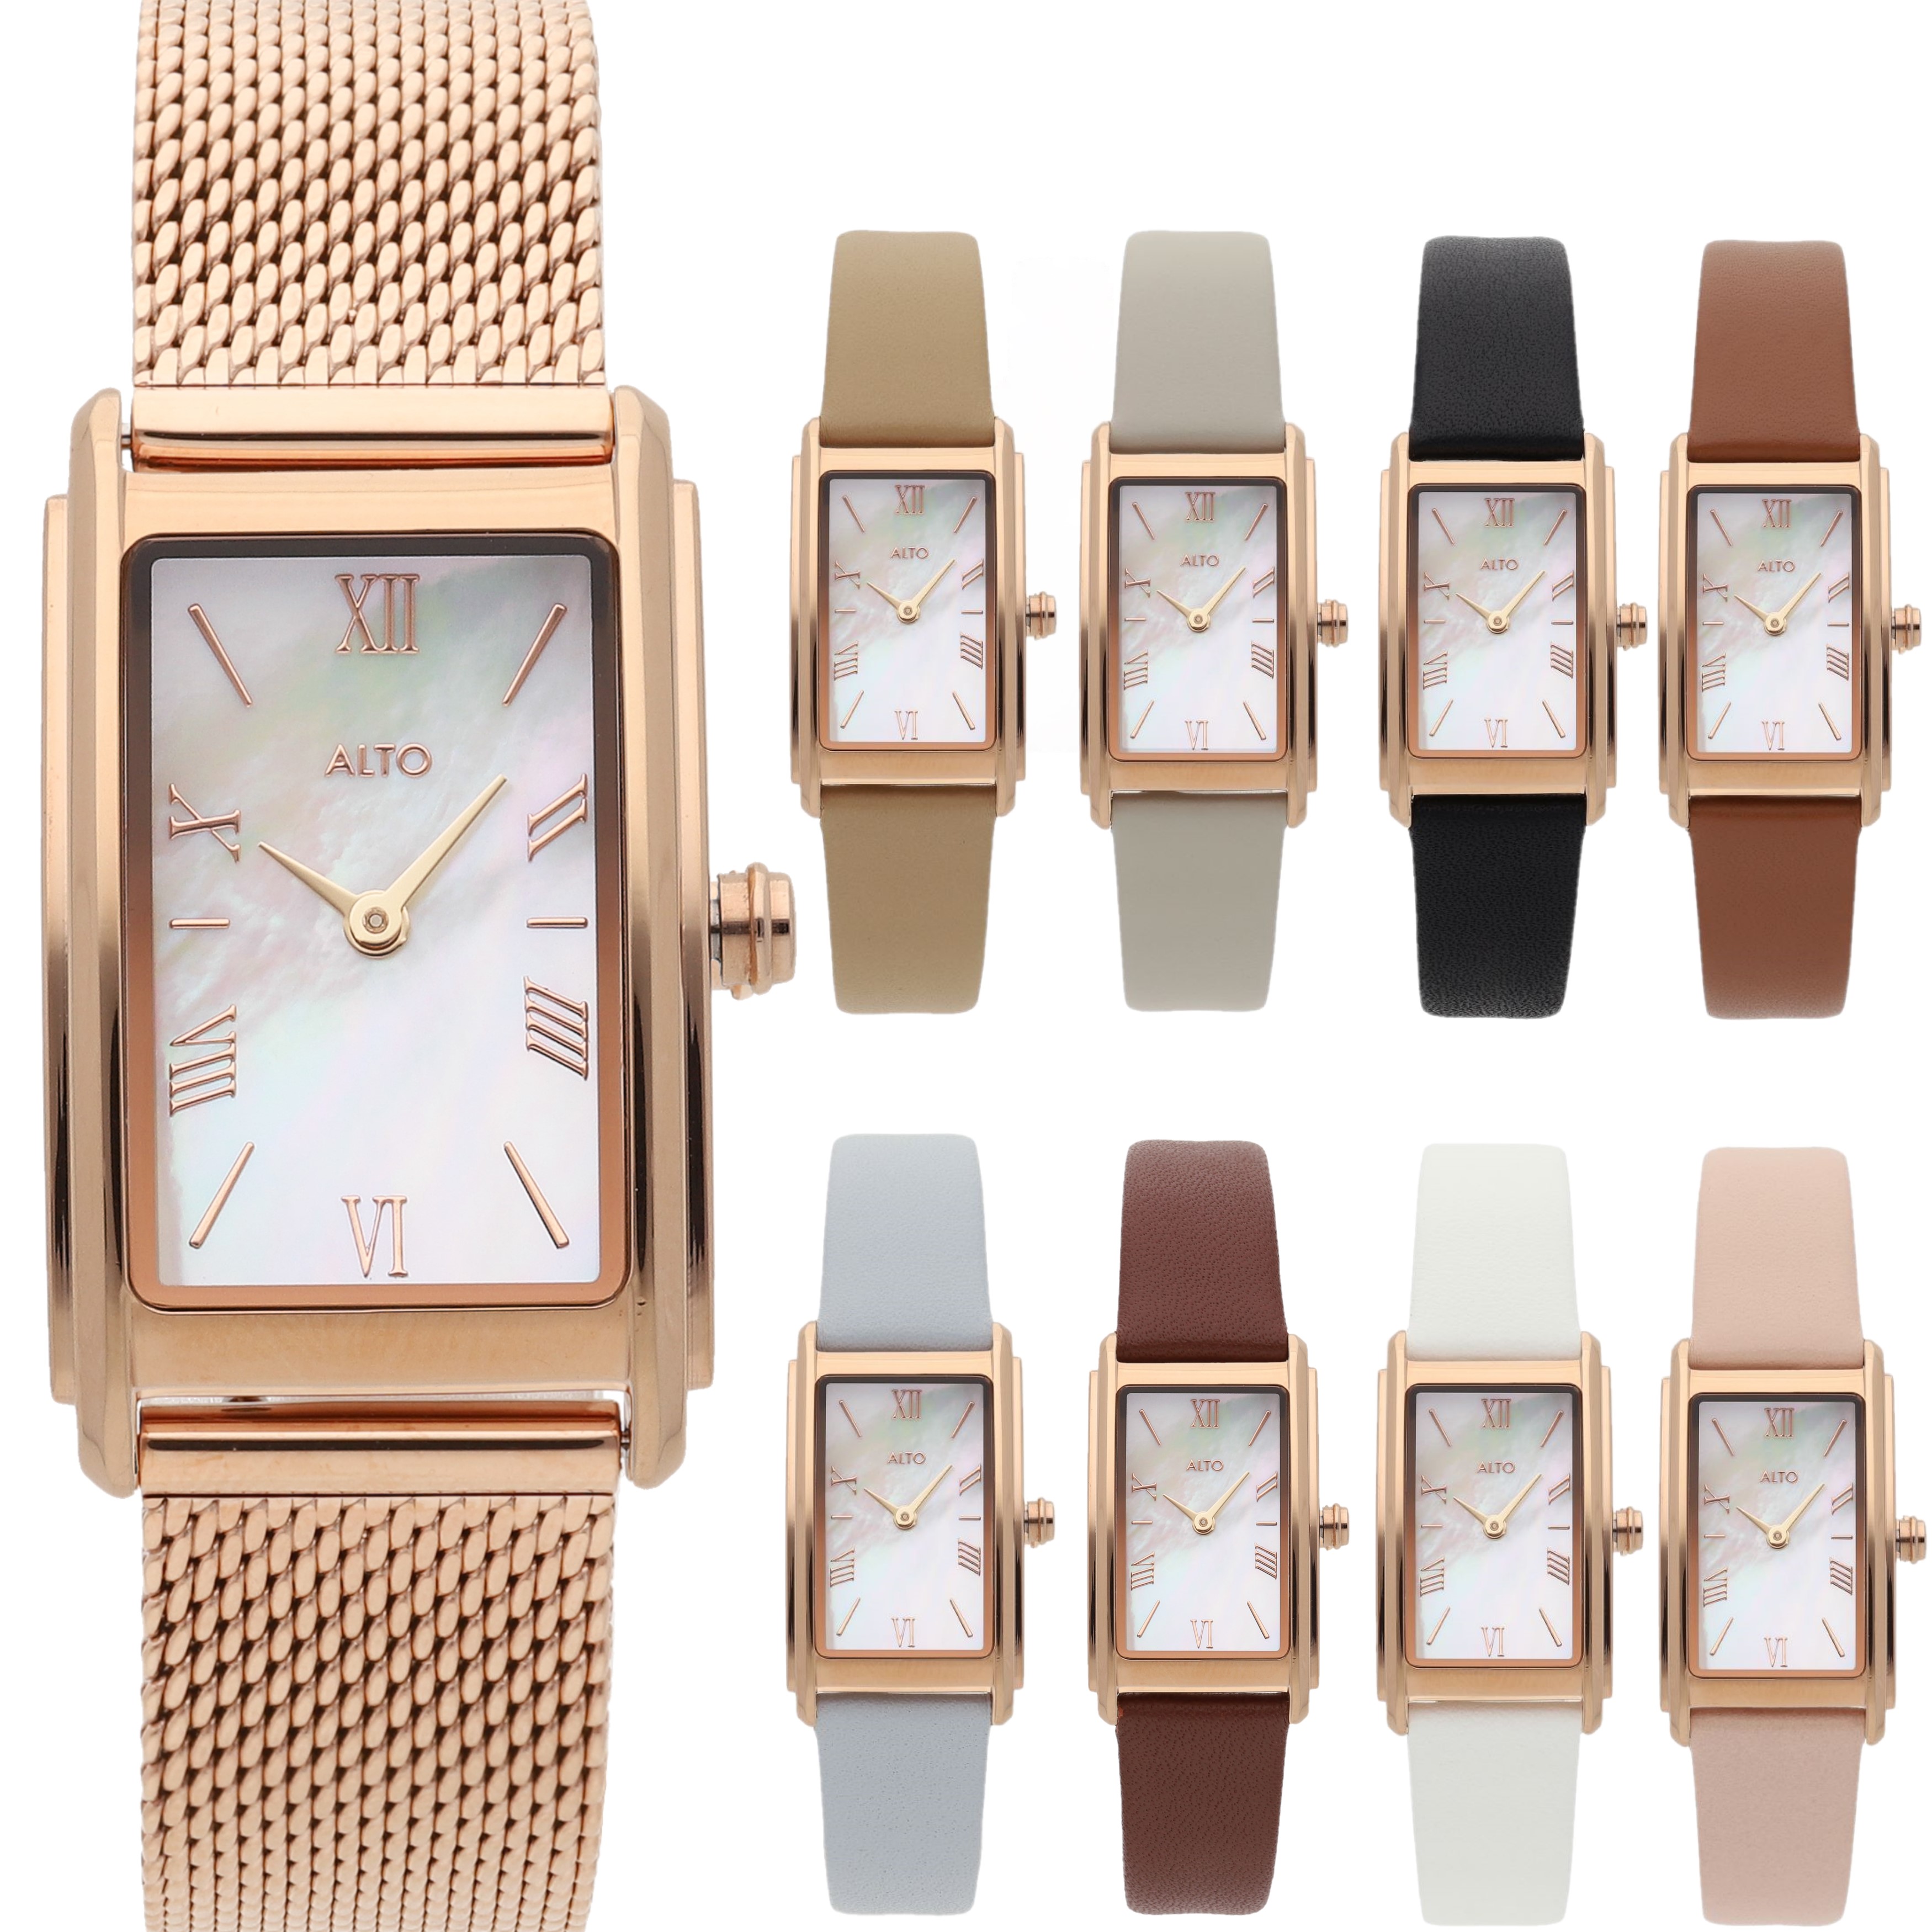 【公式店舗】 ALTO アルト 腕時計 レディース ローズゴールド メッシュ 革ベルトお買い